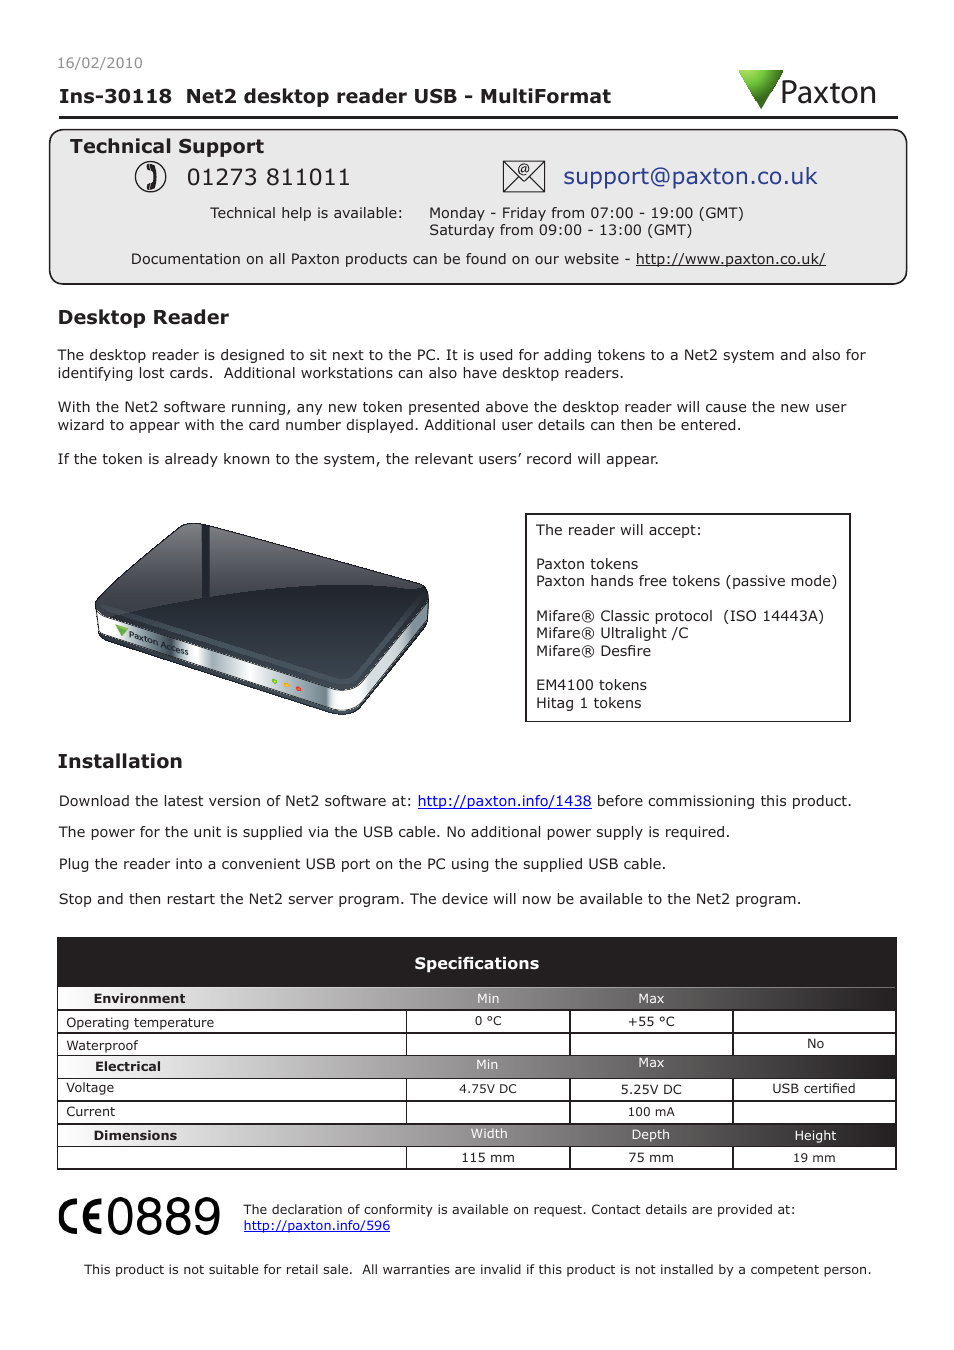 Net2 desktop reader USB - MultiFormat